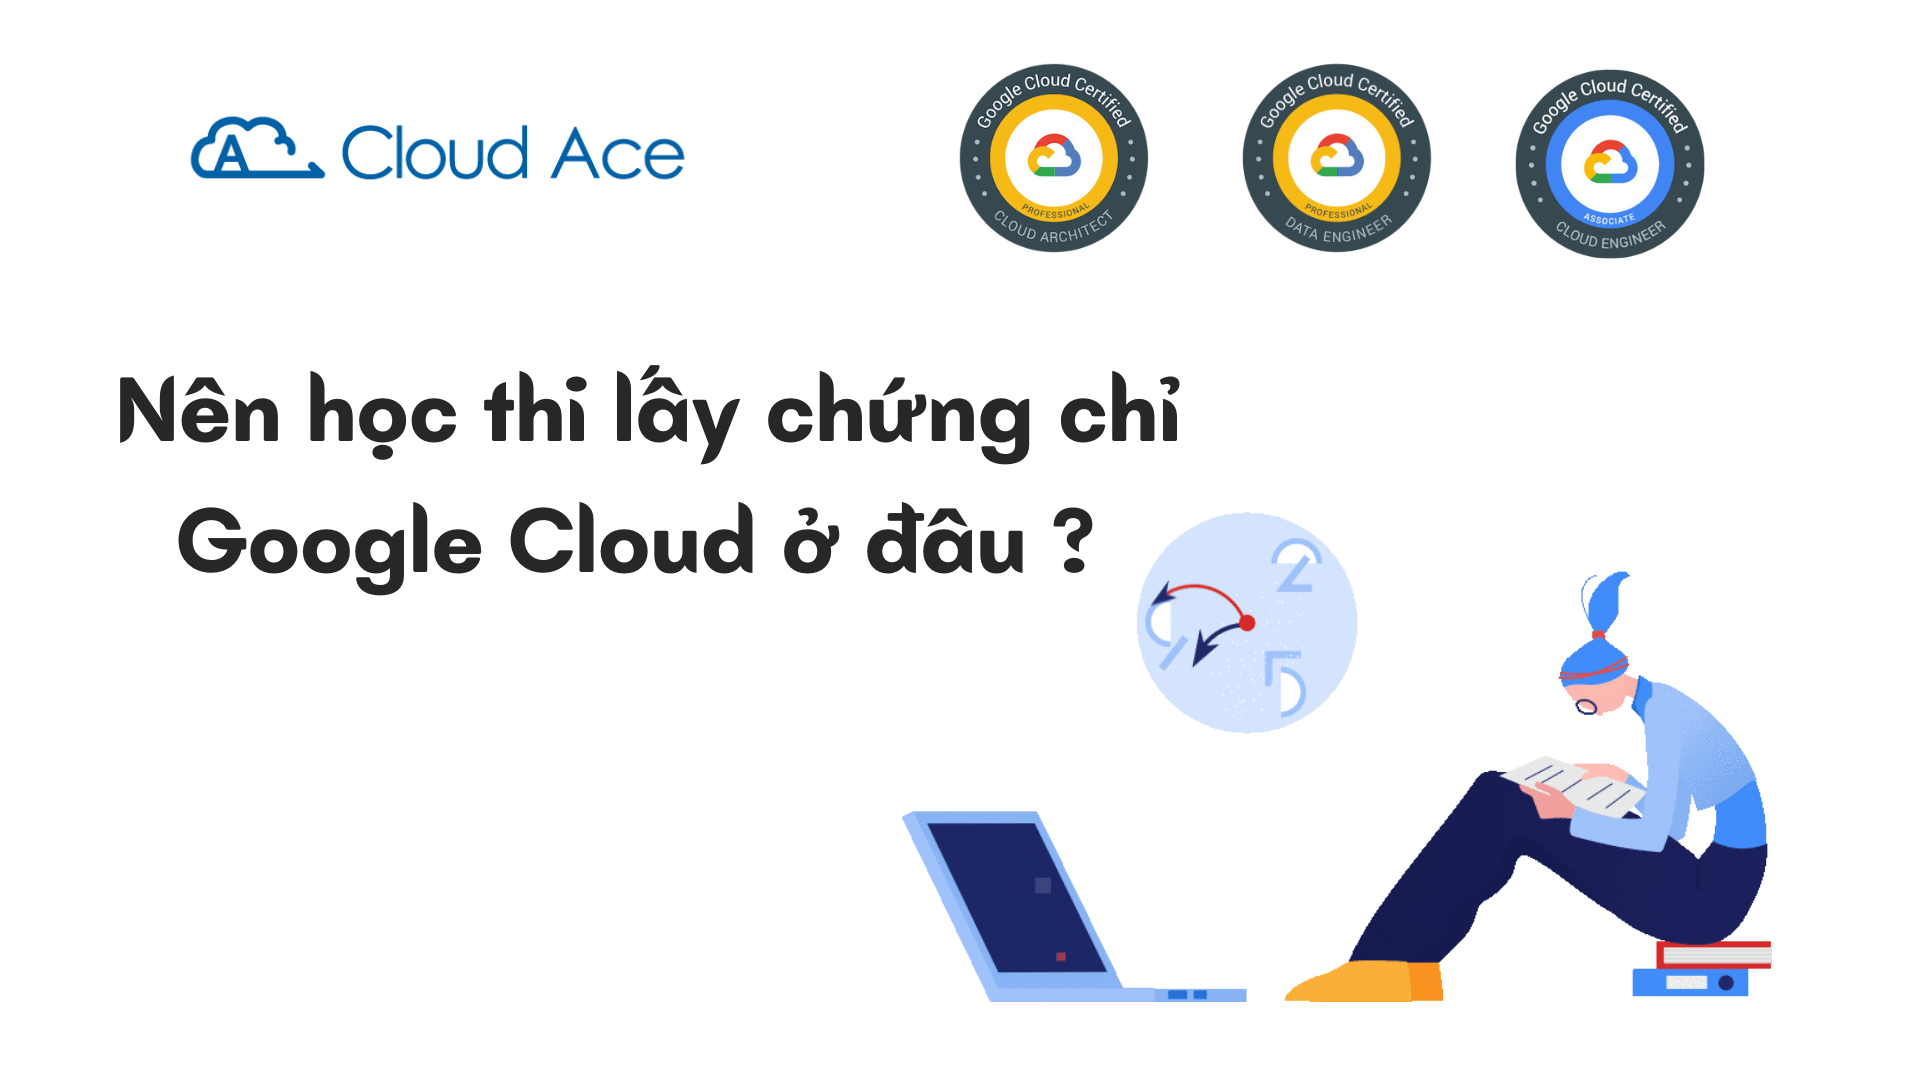 Nen-hoc-thi-lay-chung-chi-Google-cloud-o-dau